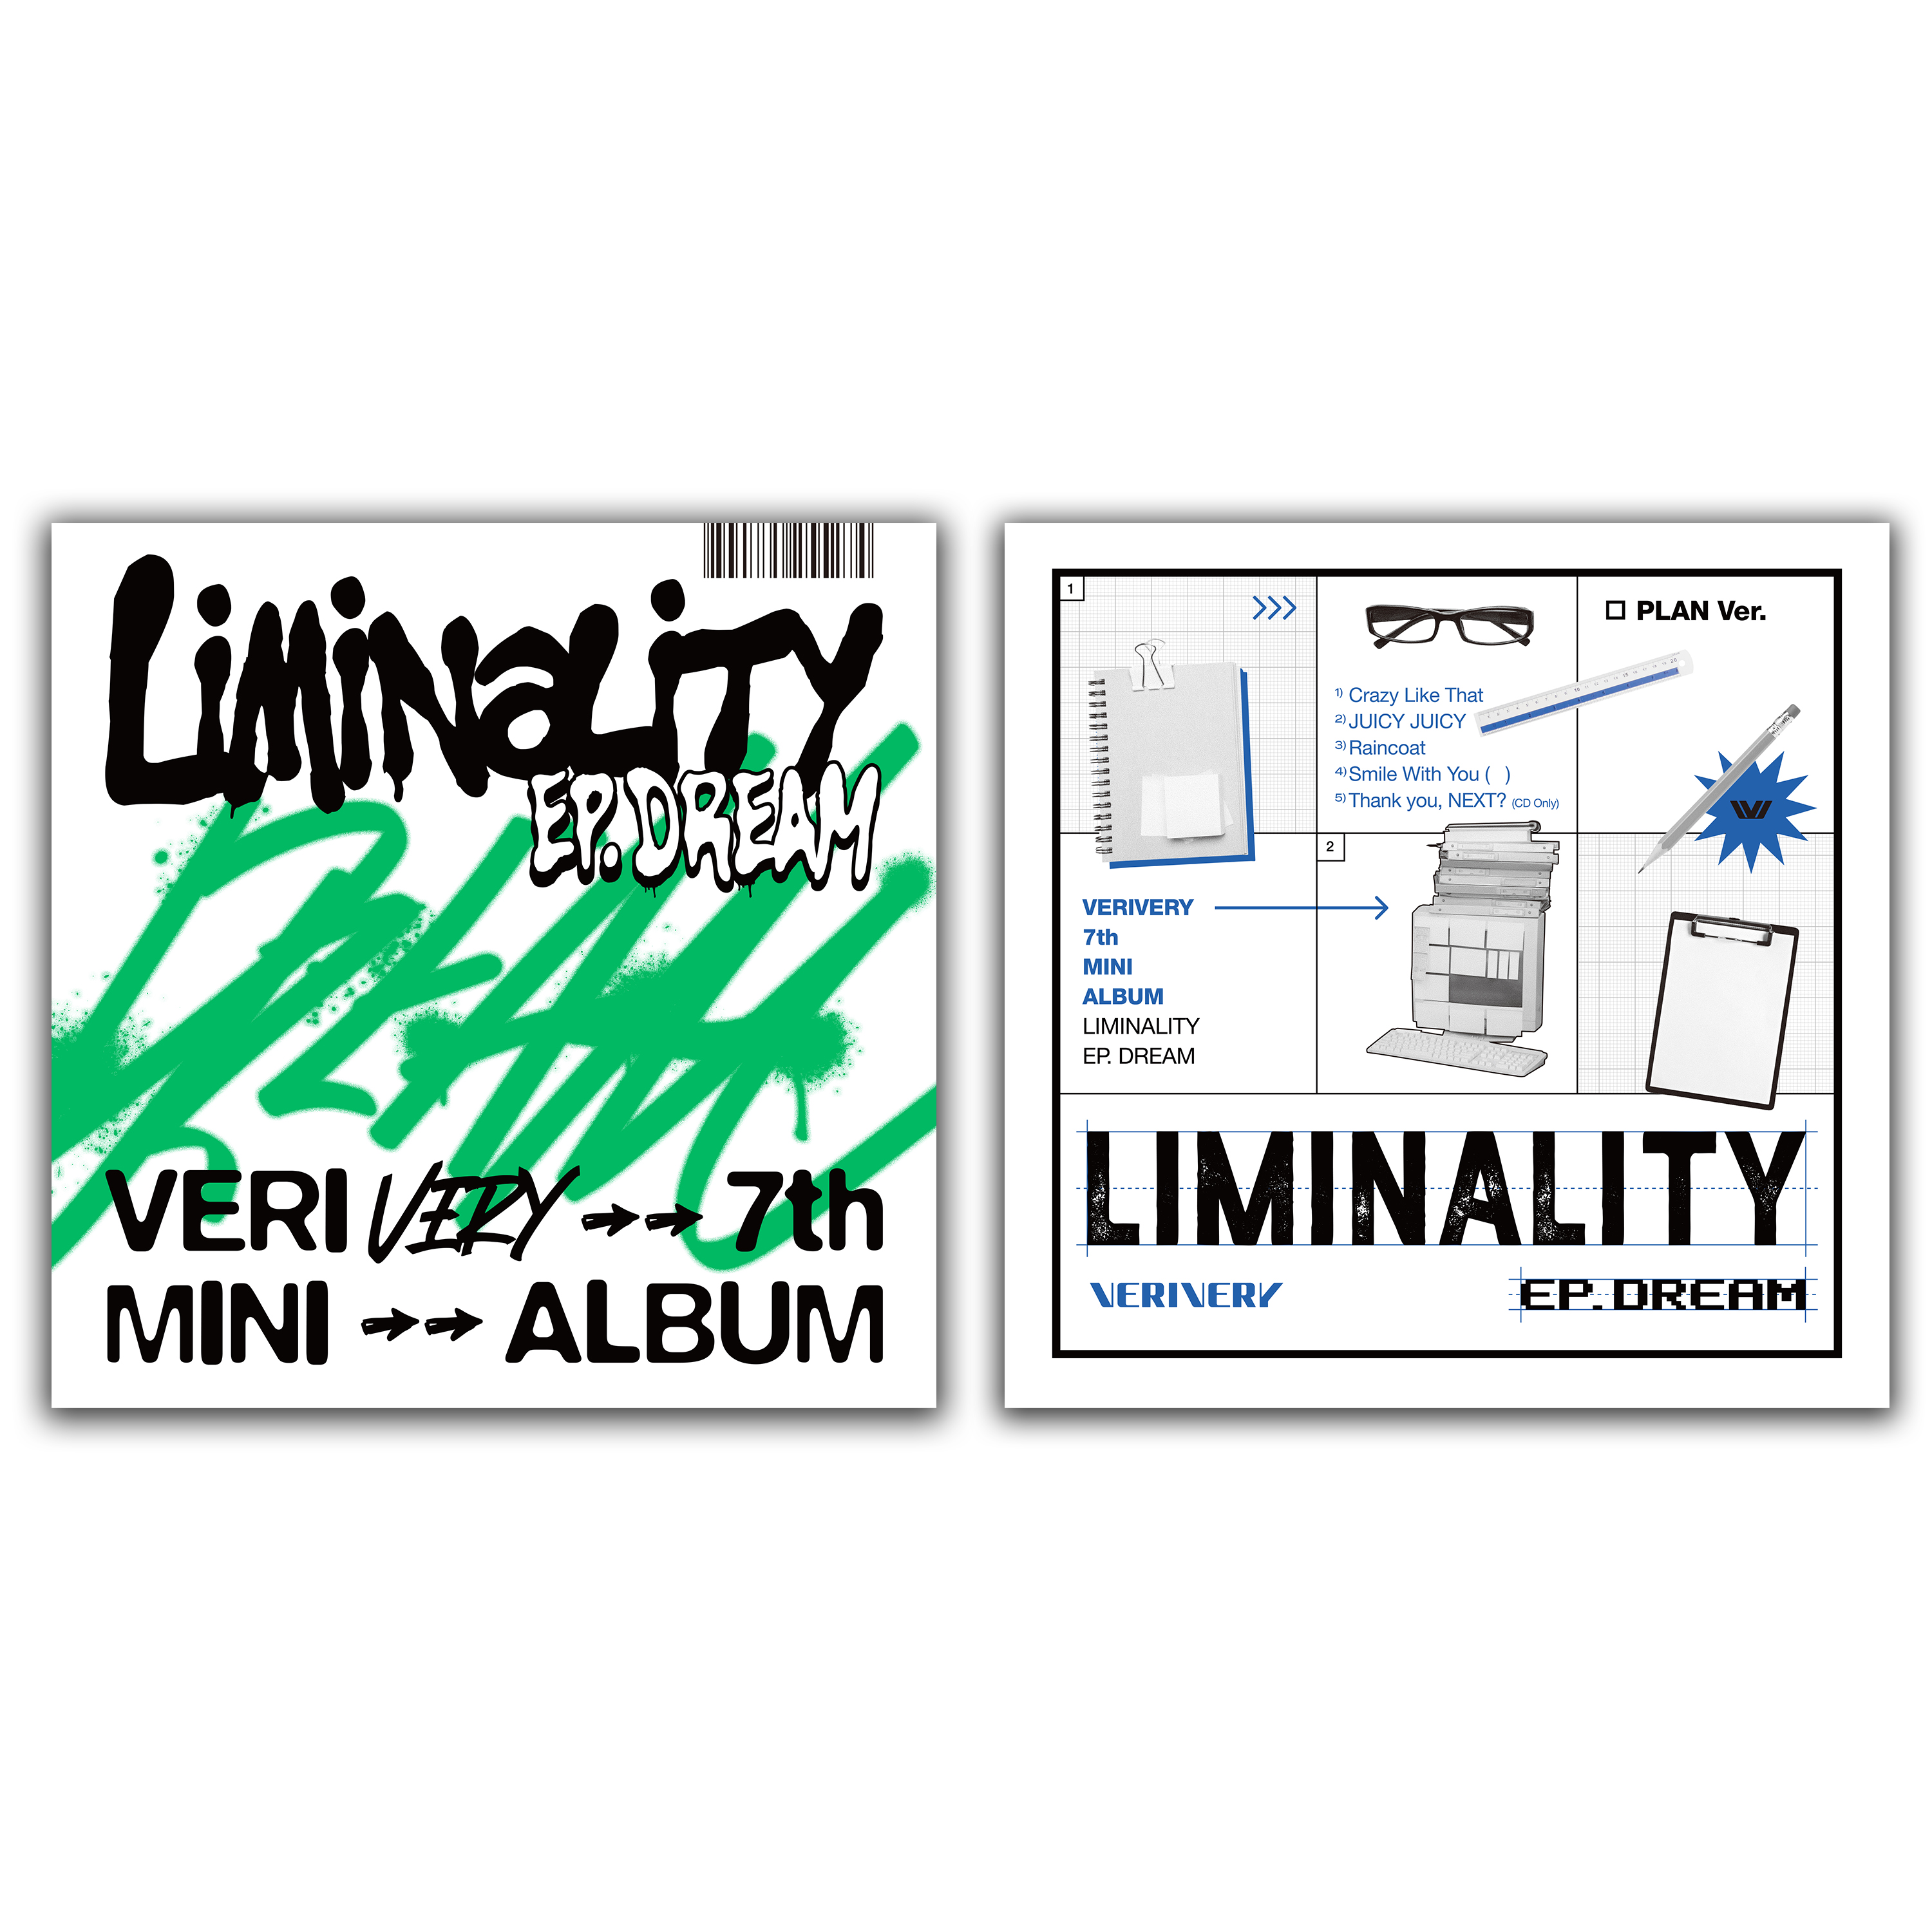 [全款 裸专 第二批 截止到5.22早7点] [2CD 套装] VERIVERY  - 迷你7辑 [Liminality - EP.DREAM] (PLAY ver. + PLAN ver.) _verivery乐园